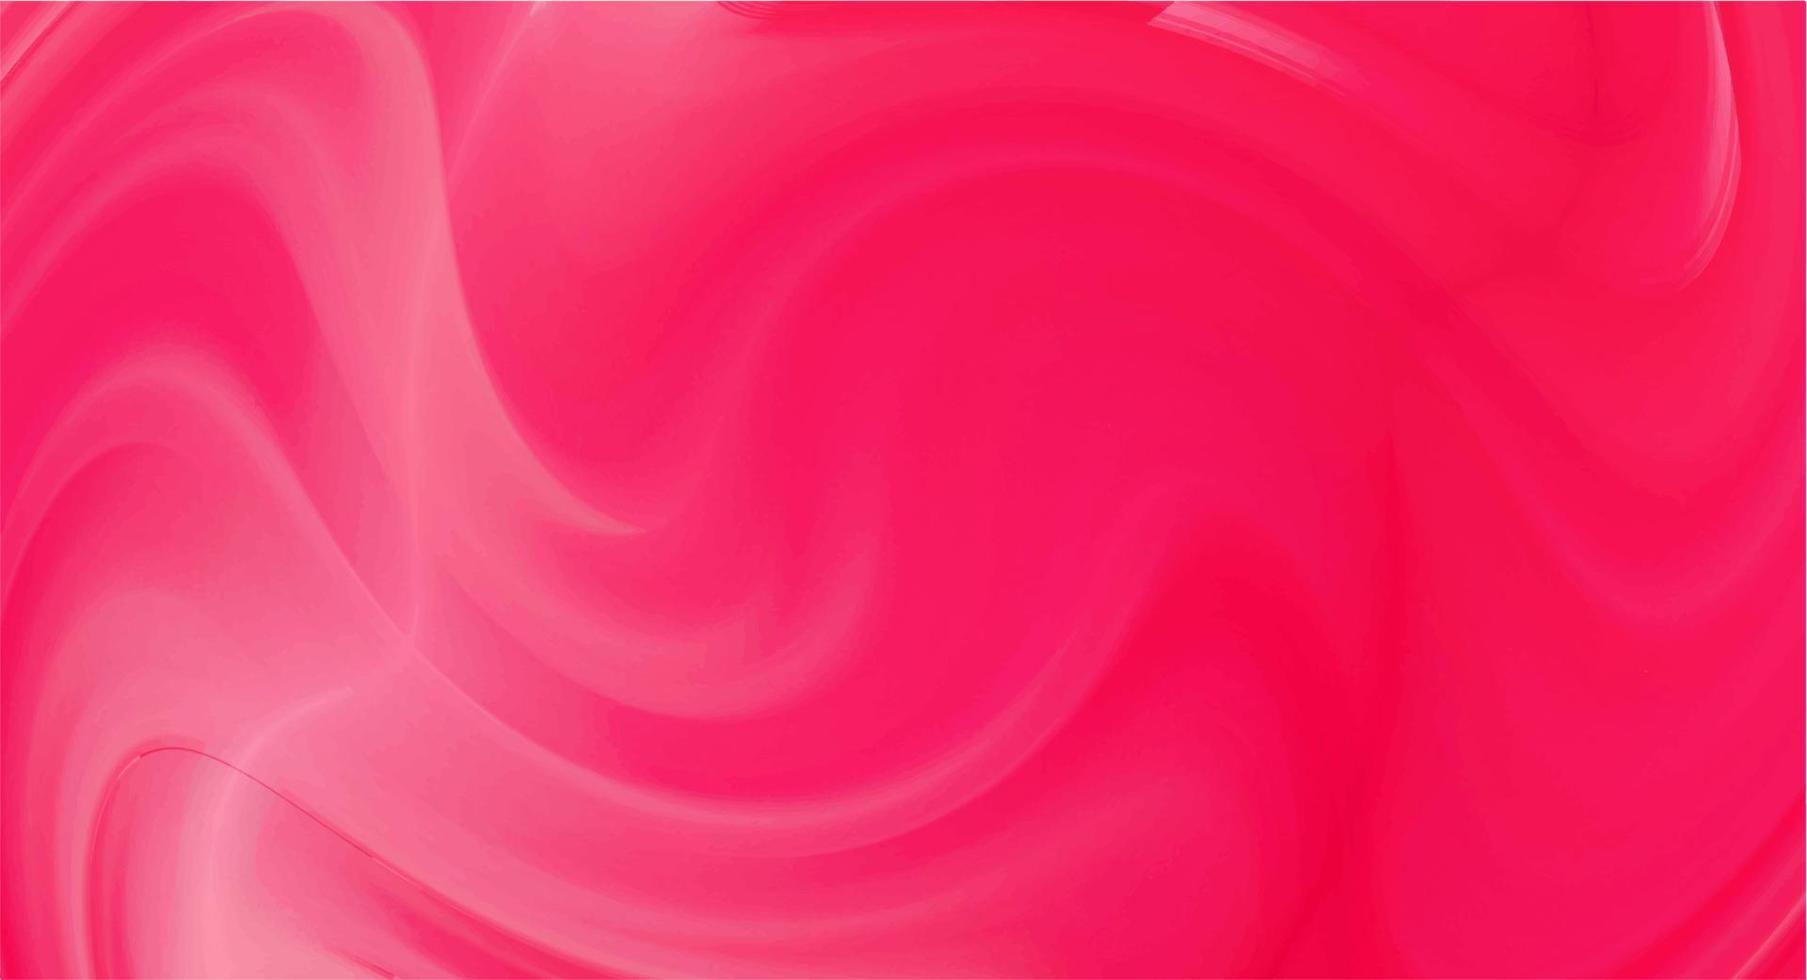 achtergrond voor de site. omslag voor de eerste pagina van de site. helder beeld in karmozijnrode en roze tinten. abstracte vectorillustratie. vector